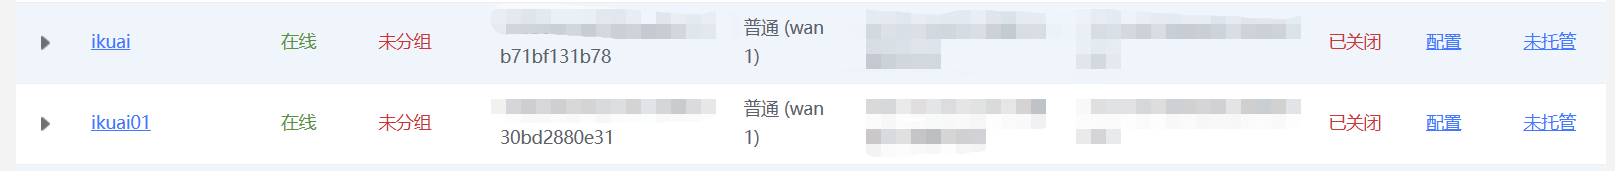 简单设置SD-WAN即可实现爱快两台路由的lan与lan互访教程  第1张